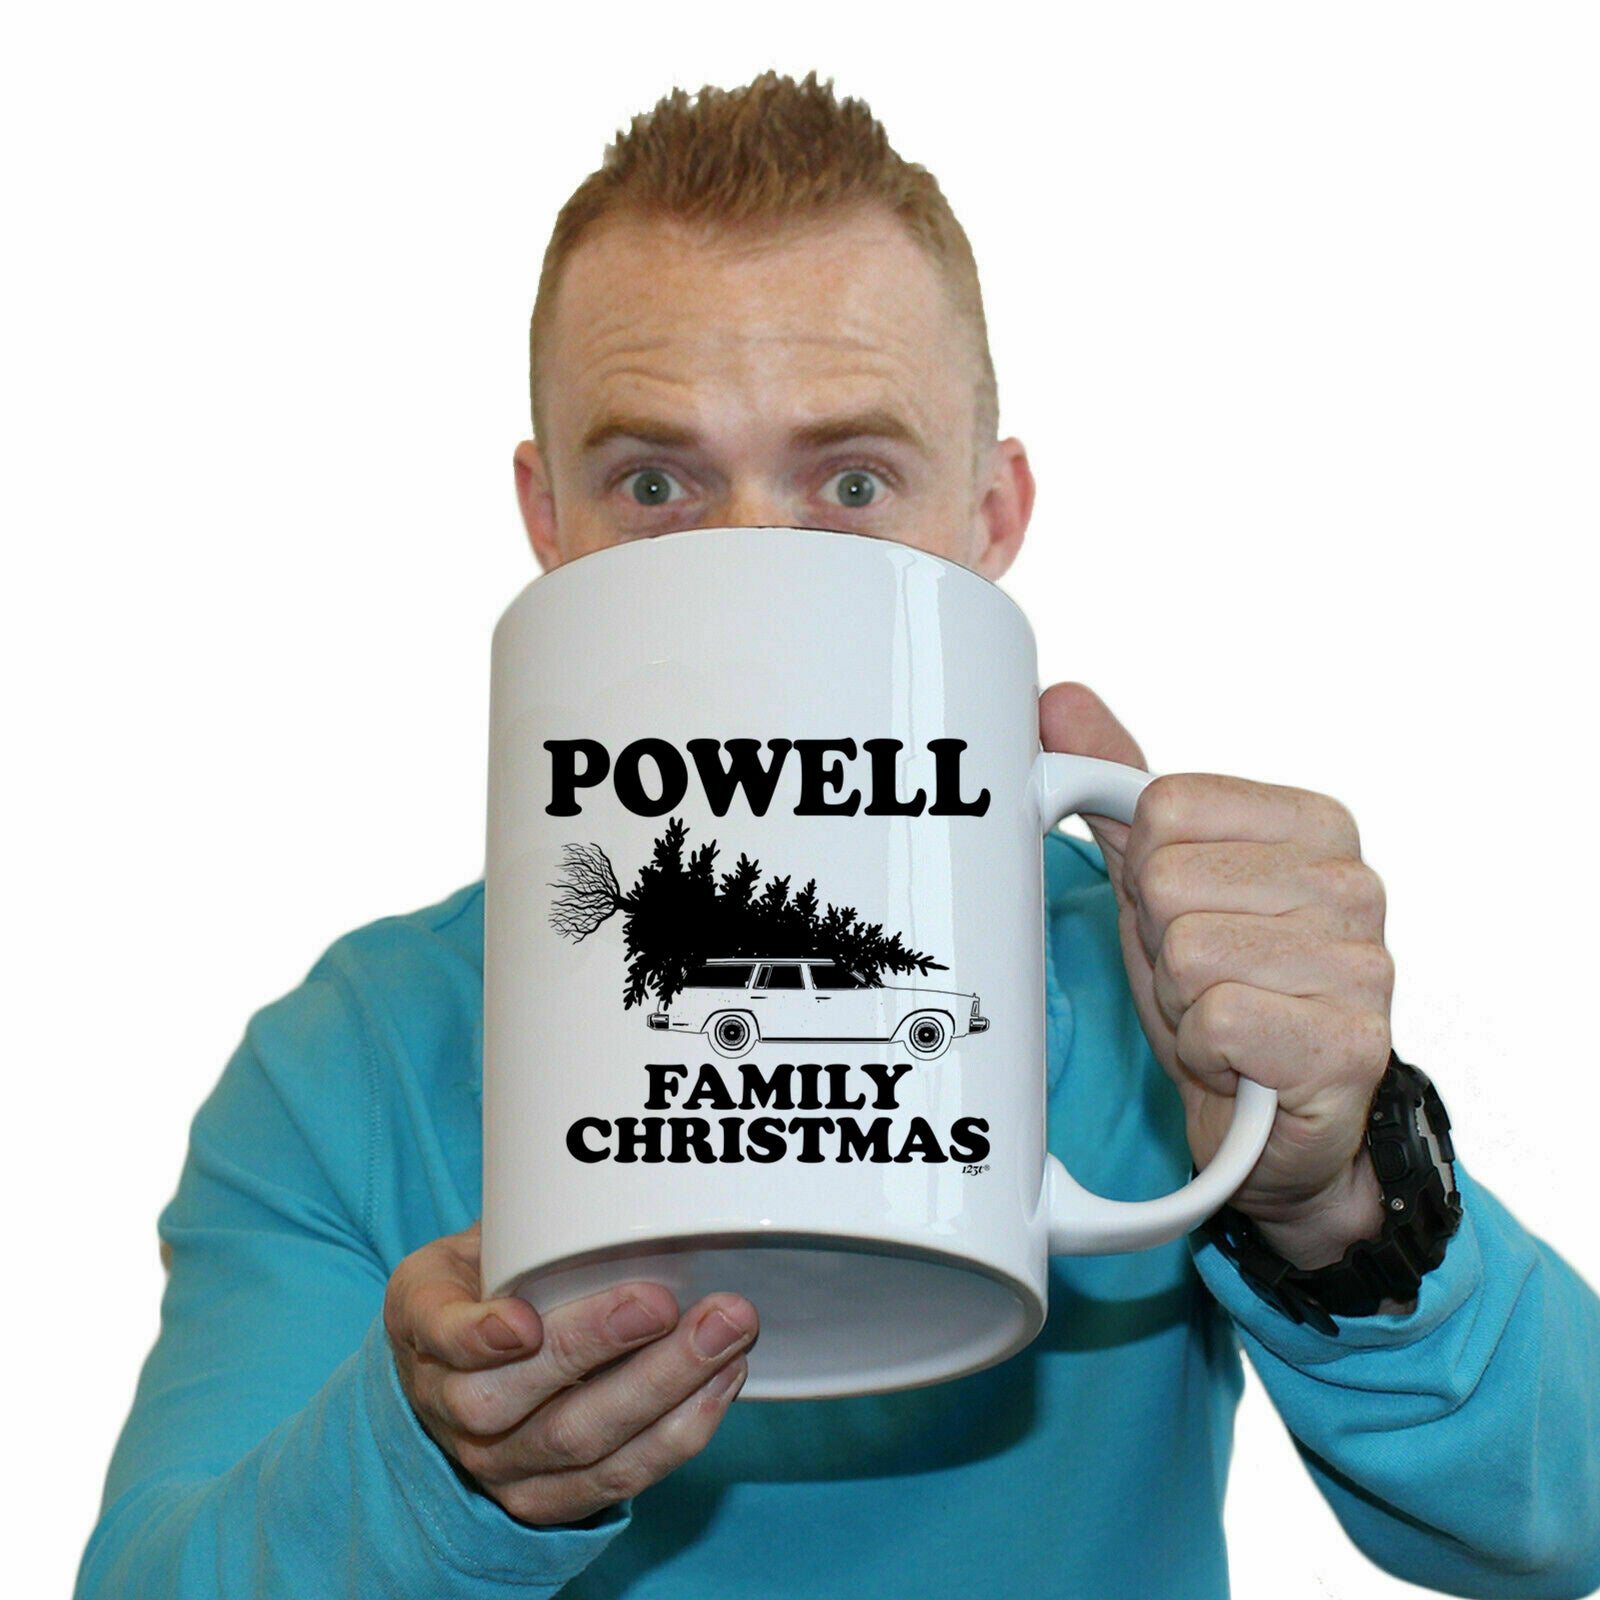 The Christmas Hub - Family Christmas Powell - Funny Giant 2 Litre Mug